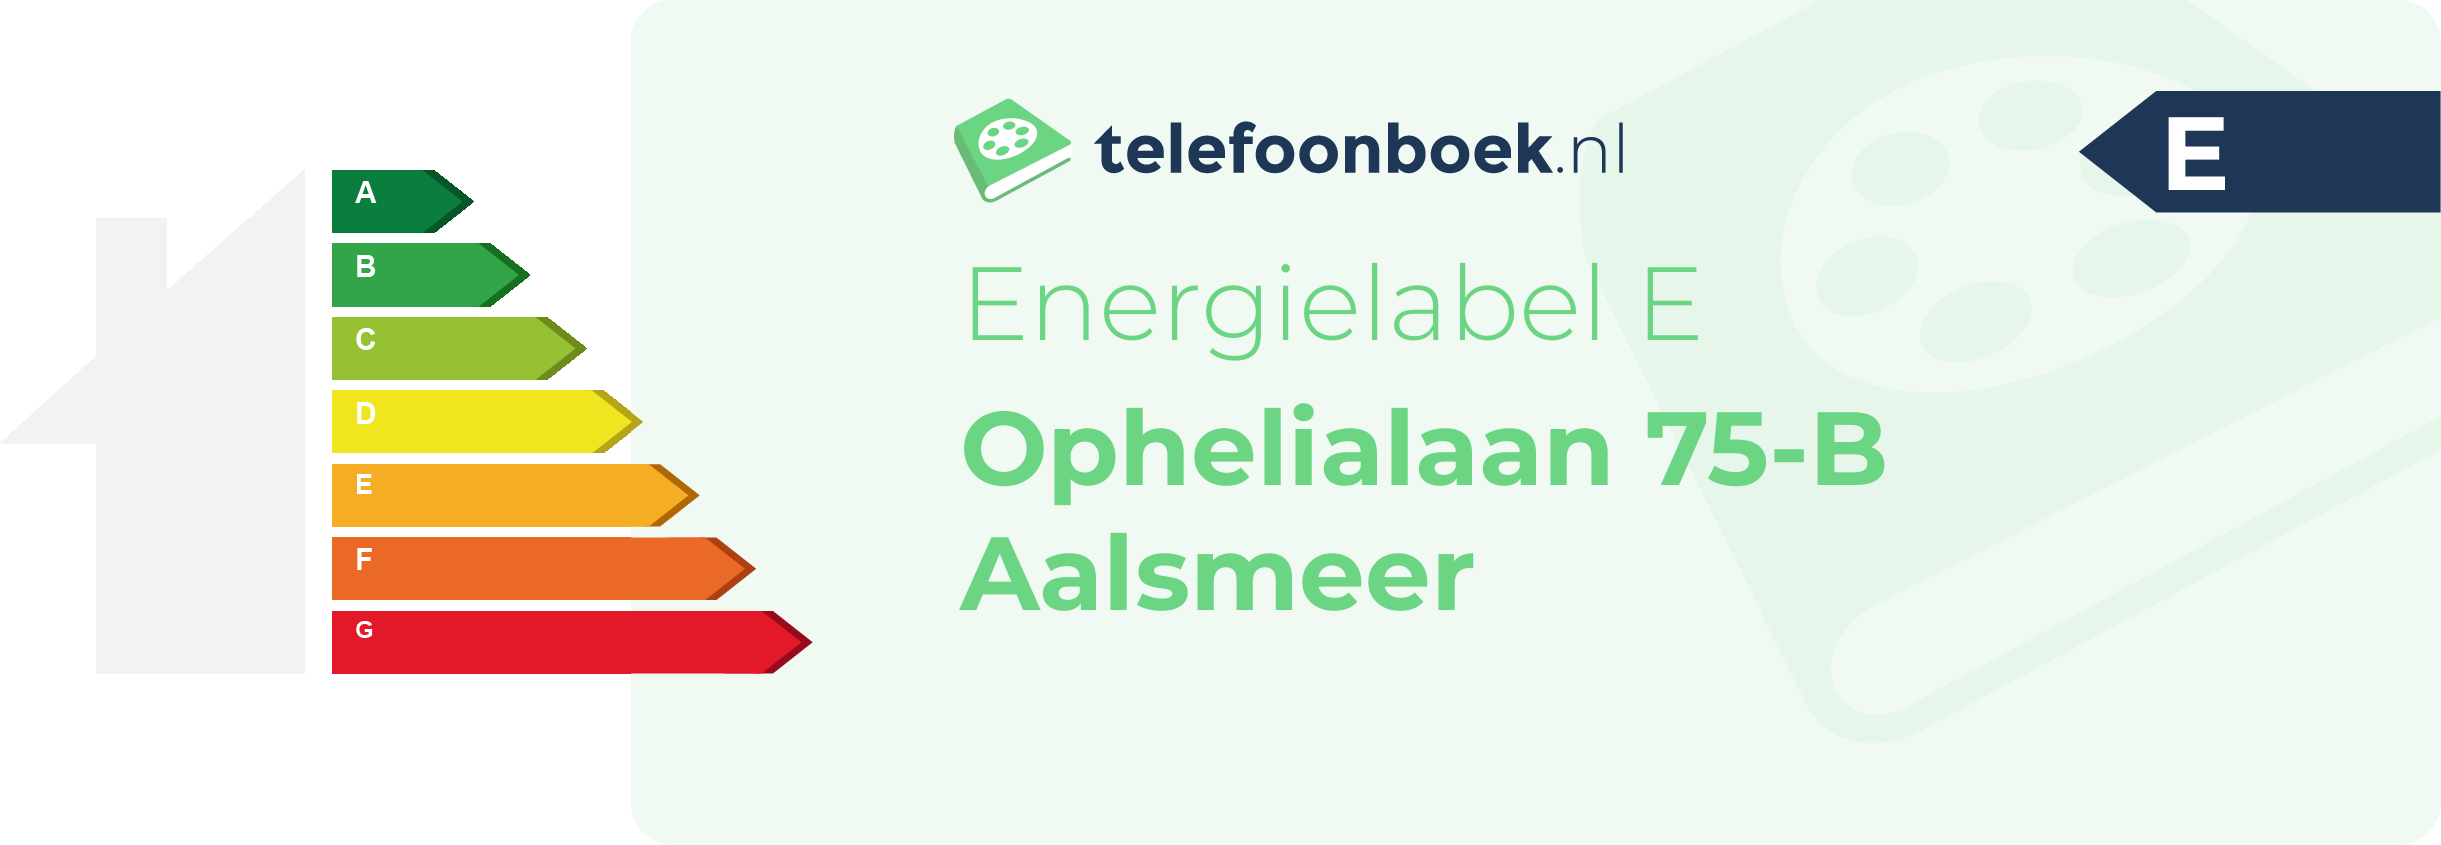 Energielabel Ophelialaan 75-B Aalsmeer